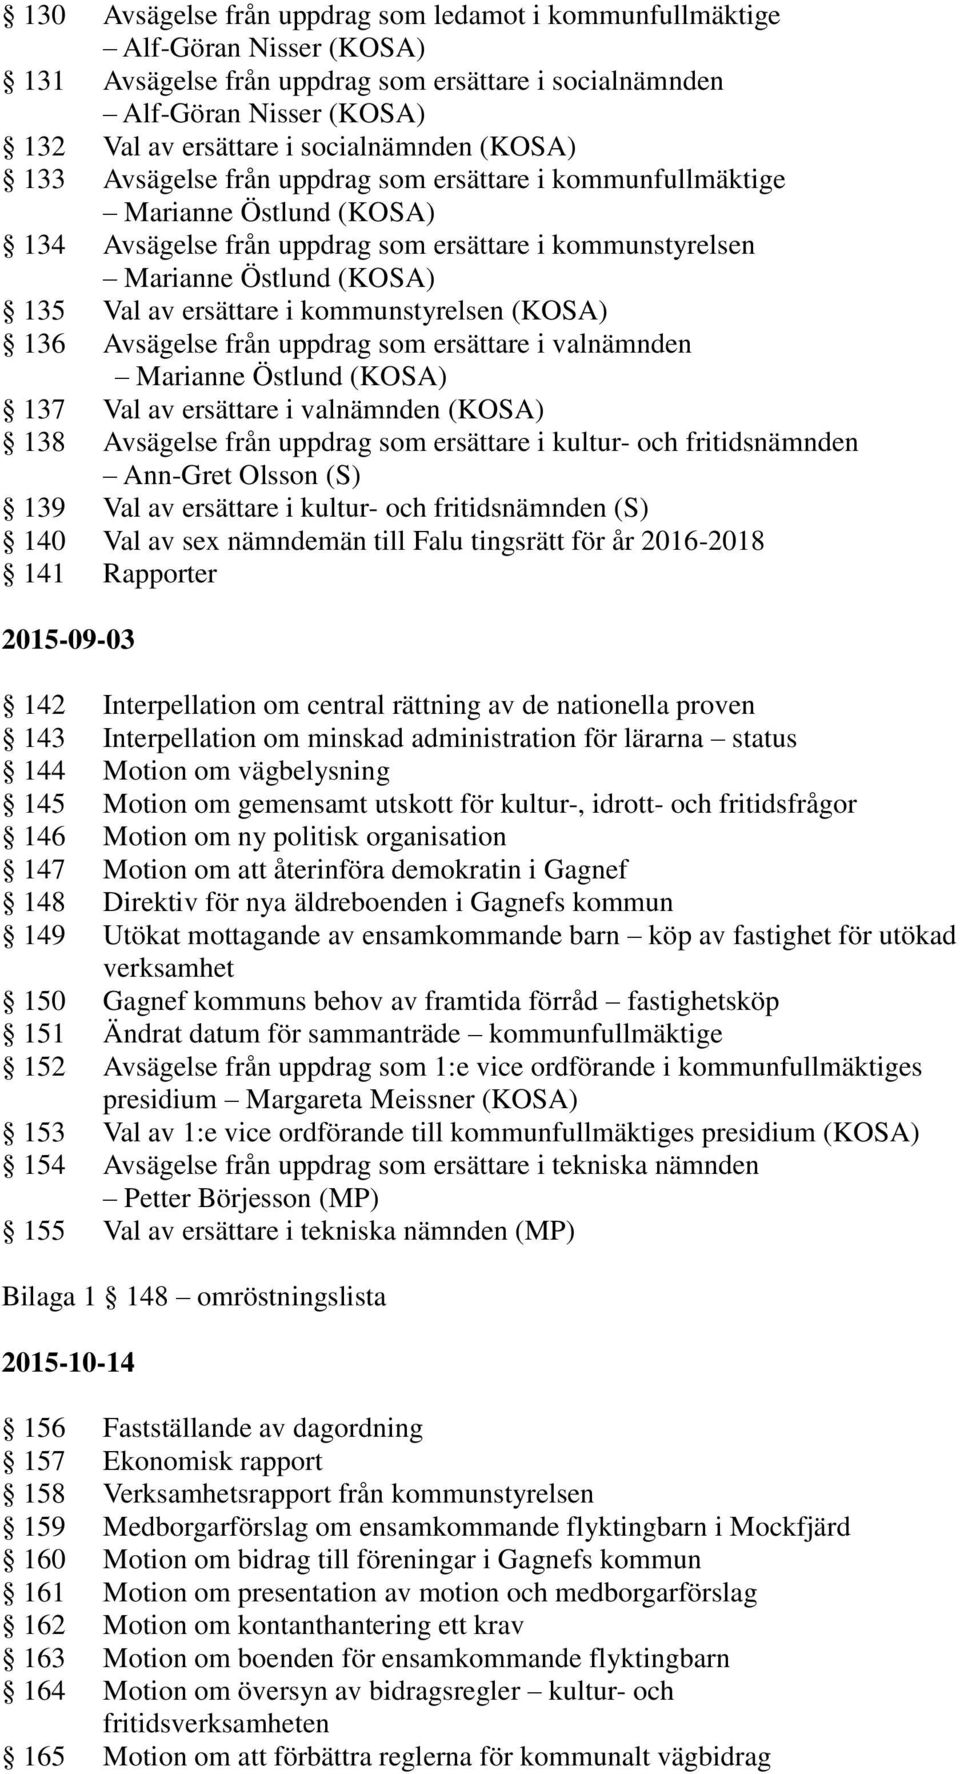 ersättare i kommunstyrelsen (KOSA) 136 Avsägelse från uppdrag som ersättare i valnämnden Marianne Östlund (KOSA) 137 Val av ersättare i valnämnden (KOSA) 138 Avsägelse från uppdrag som ersättare i